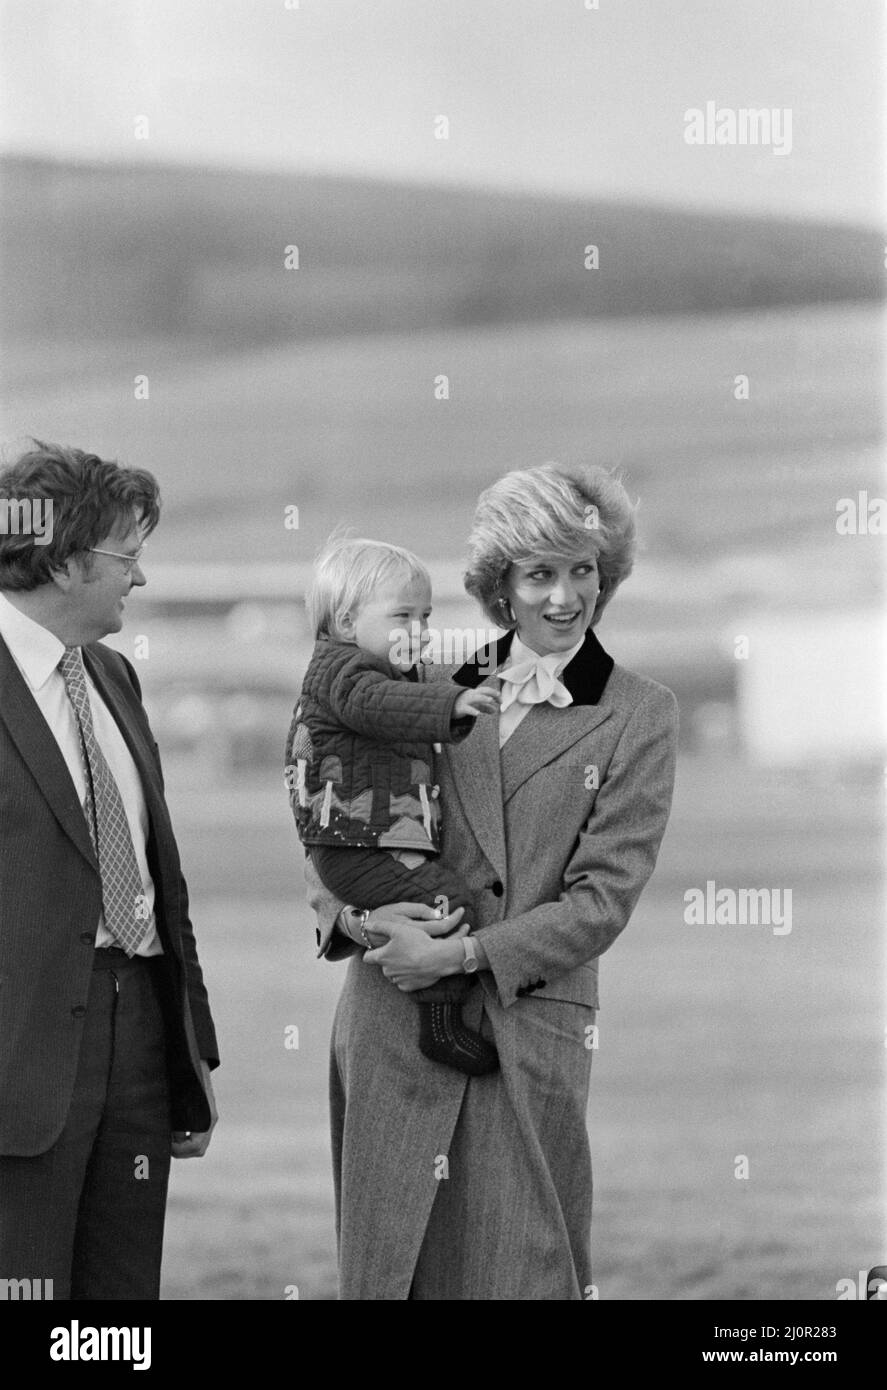 S.A.R. la princesse Diana, la princesse de Galles, tient son fils le prince William, avant de monter à bord de l'avion royal à l'aéroport d'Aberdeen, en Écosse. Photo 3 de 4 dans cette séquence de 4 photos, la princesse Diana demande au prince William de se désaler. Il ne comprend pas et ne vague pas. La princesse Diana se fait alors la vague, et le prince William se joint bientôt à elle en signe d'agité. Copie de sa mère. Il s'agit peut-être d'une vague royale, même la première, d'un prince William âgé de 16th mois. Photo prise le 24th octobre 1983 Banque D'Images